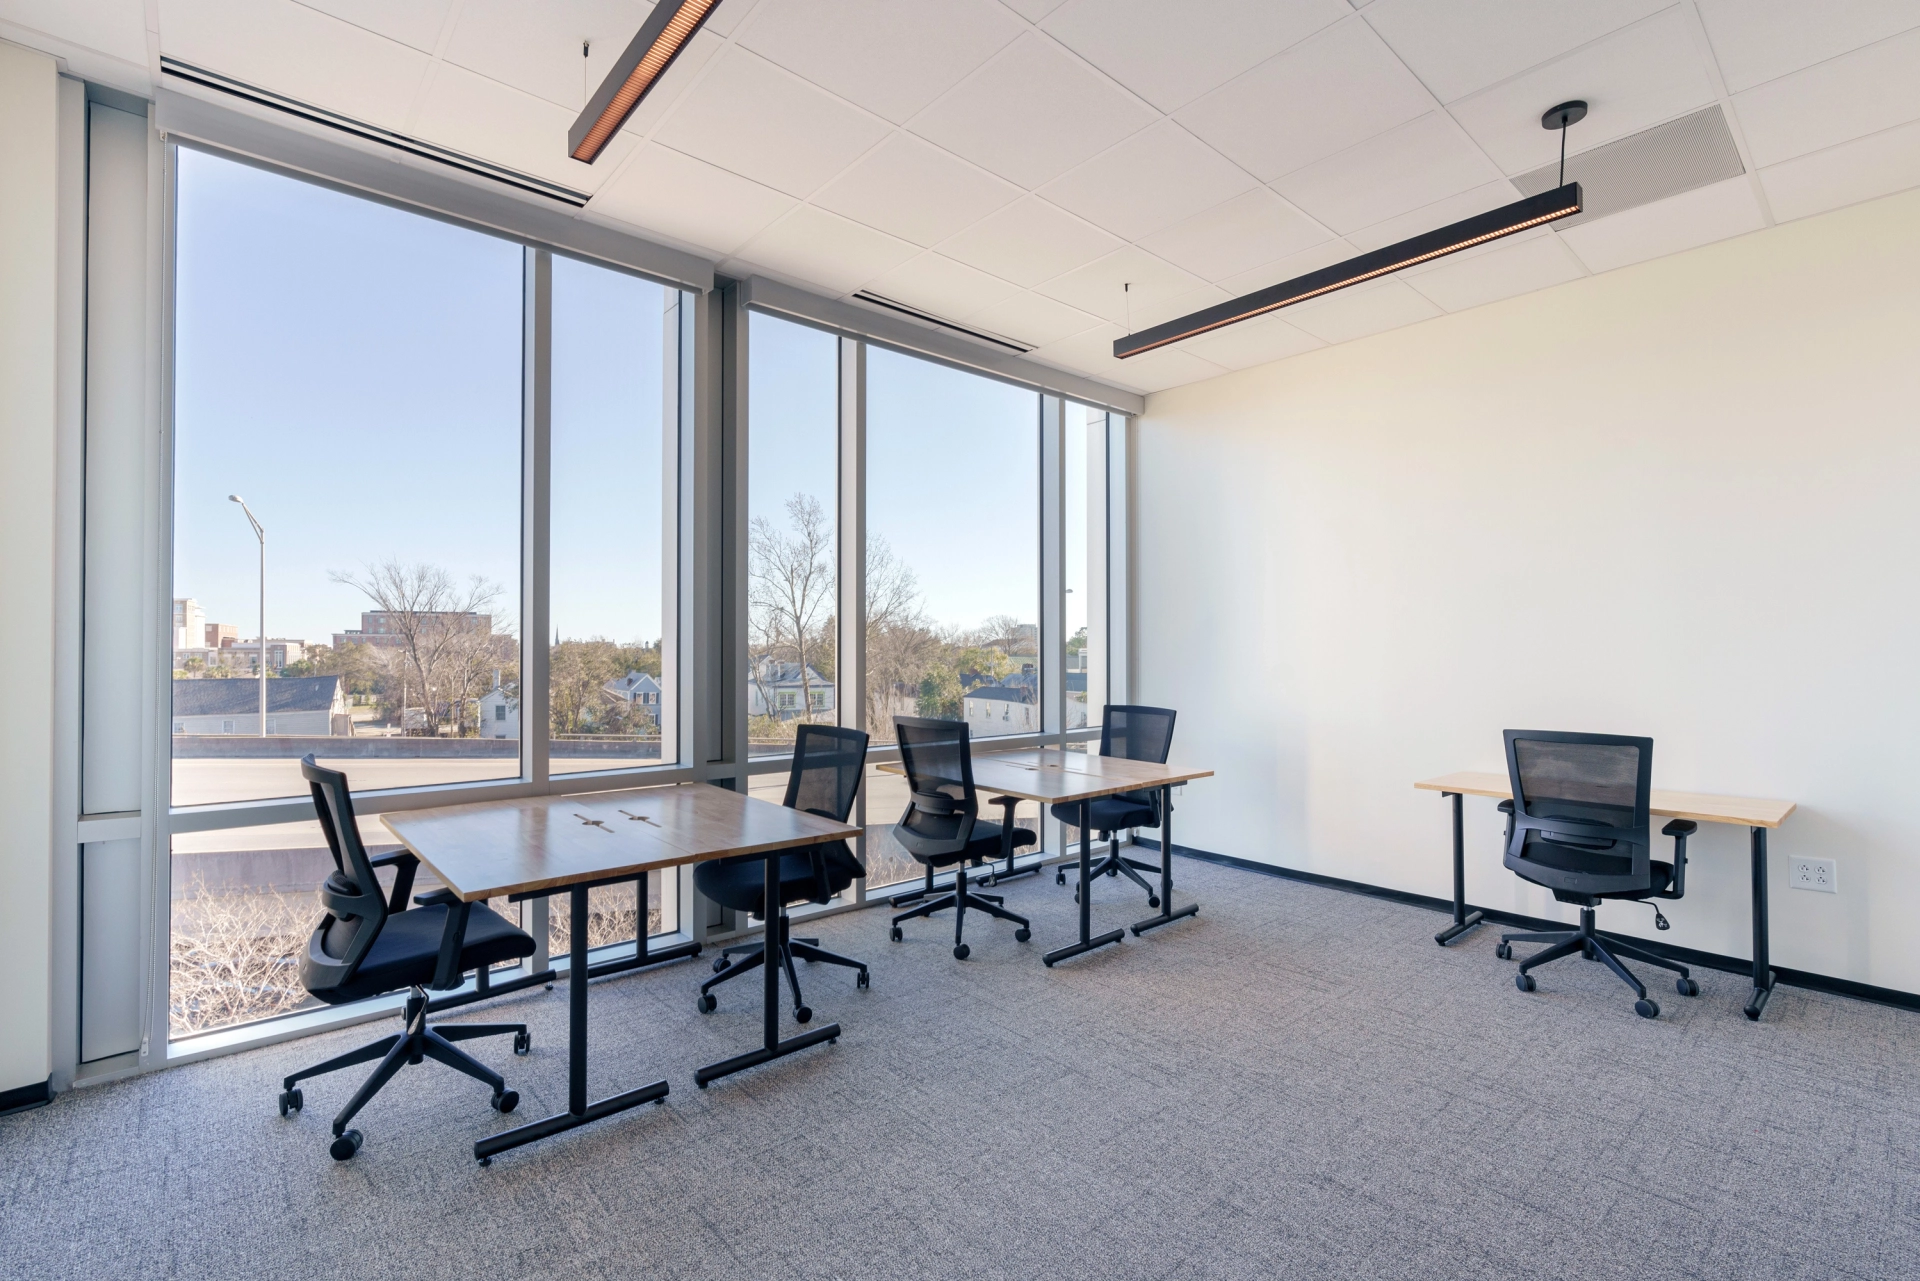 Un espace de travail de coworking équipé de bureaux, de chaises et de grandes fenêtres.